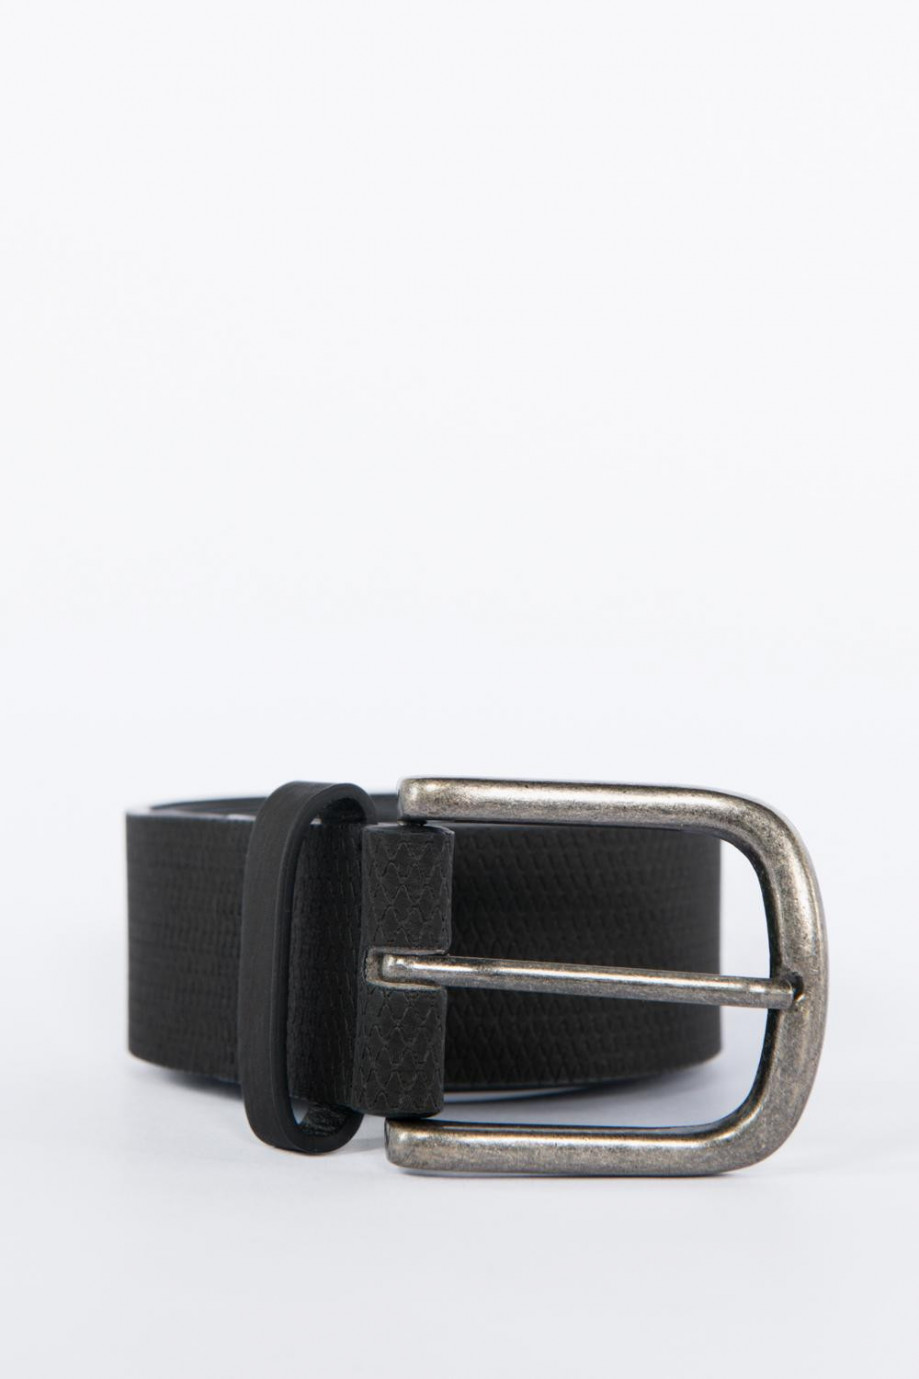 Cinturón negro con hebilla cuadrada metálica plateada